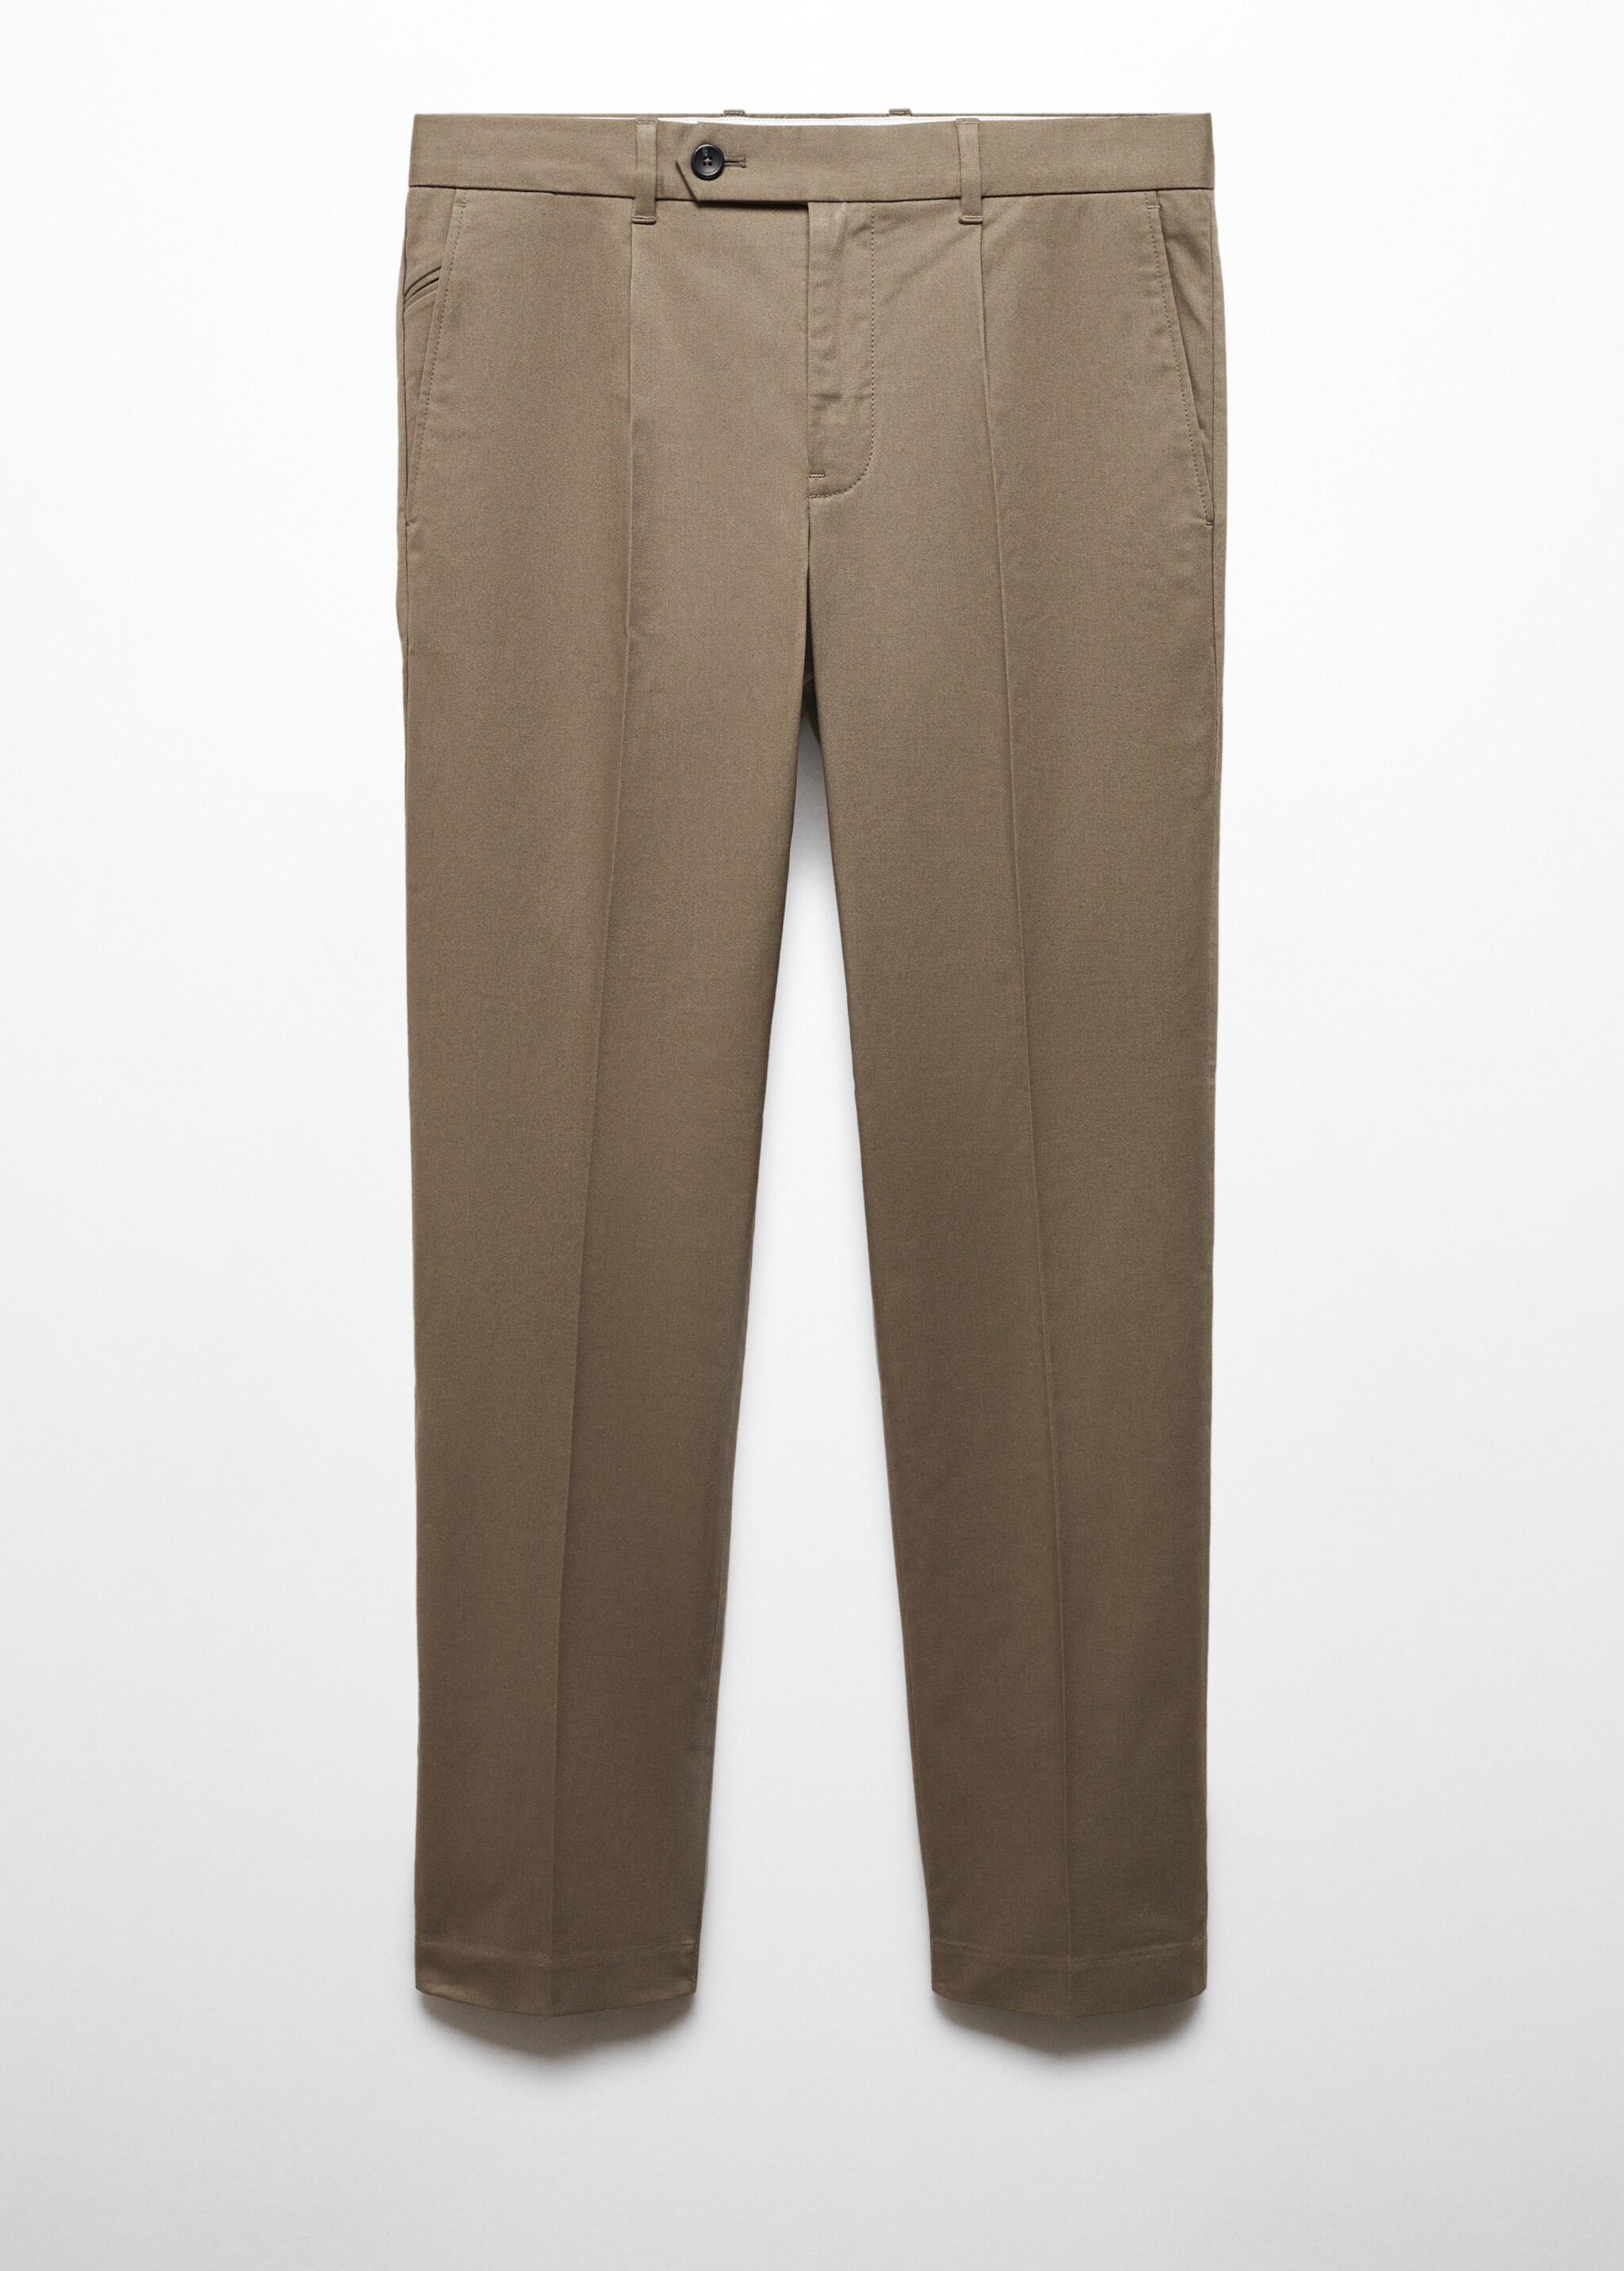 Pantalón algodón slim fit pinzas - Artículo sin modelo